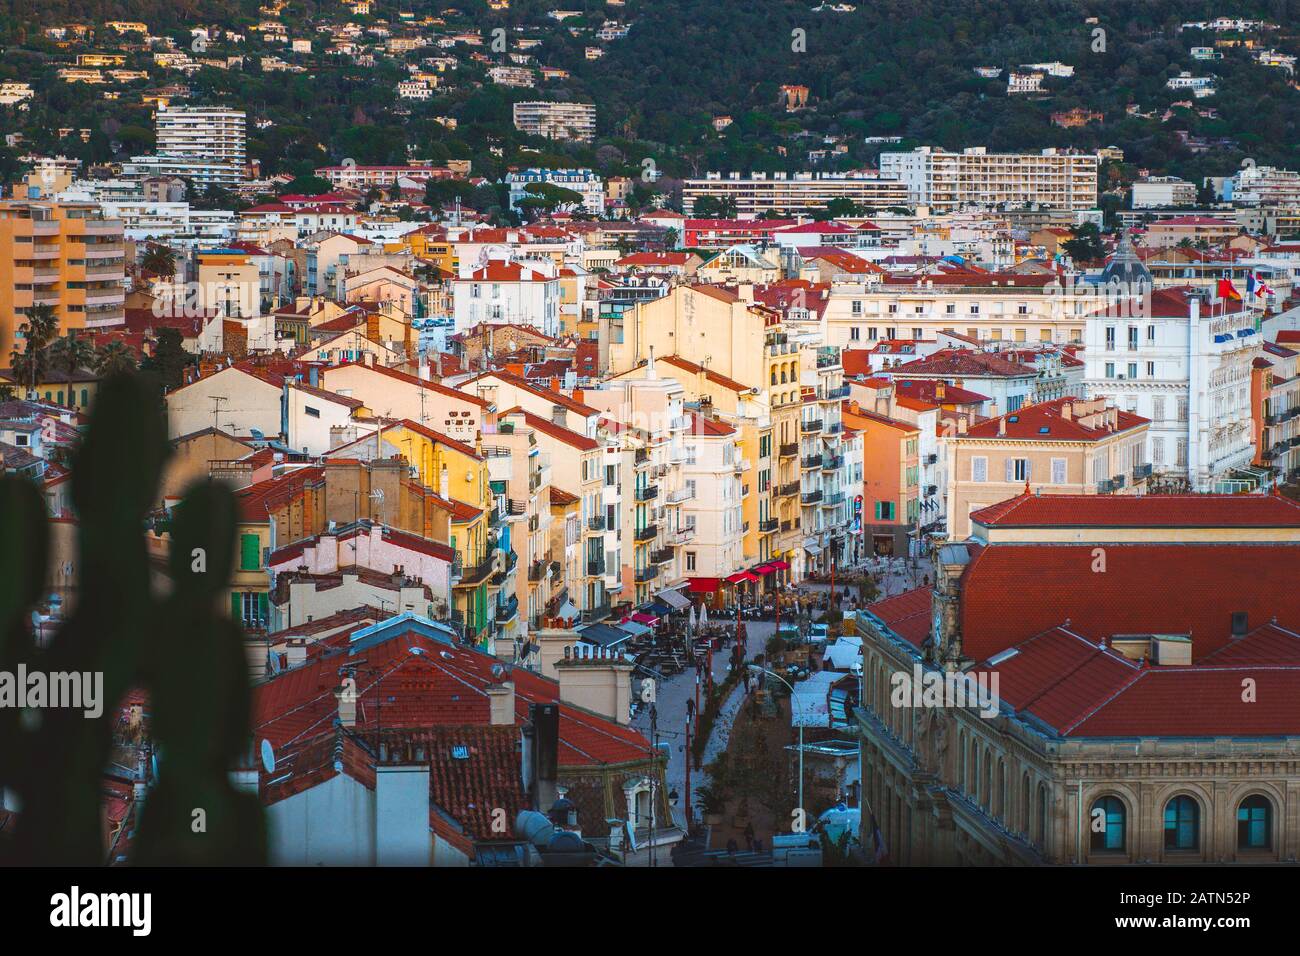 Cannes, France. Vue panoramique sur l'architecture et les bâtiments colorés de la vieille ville. Côte d'Azur ou Côte d'Azur en France. Banque D'Images